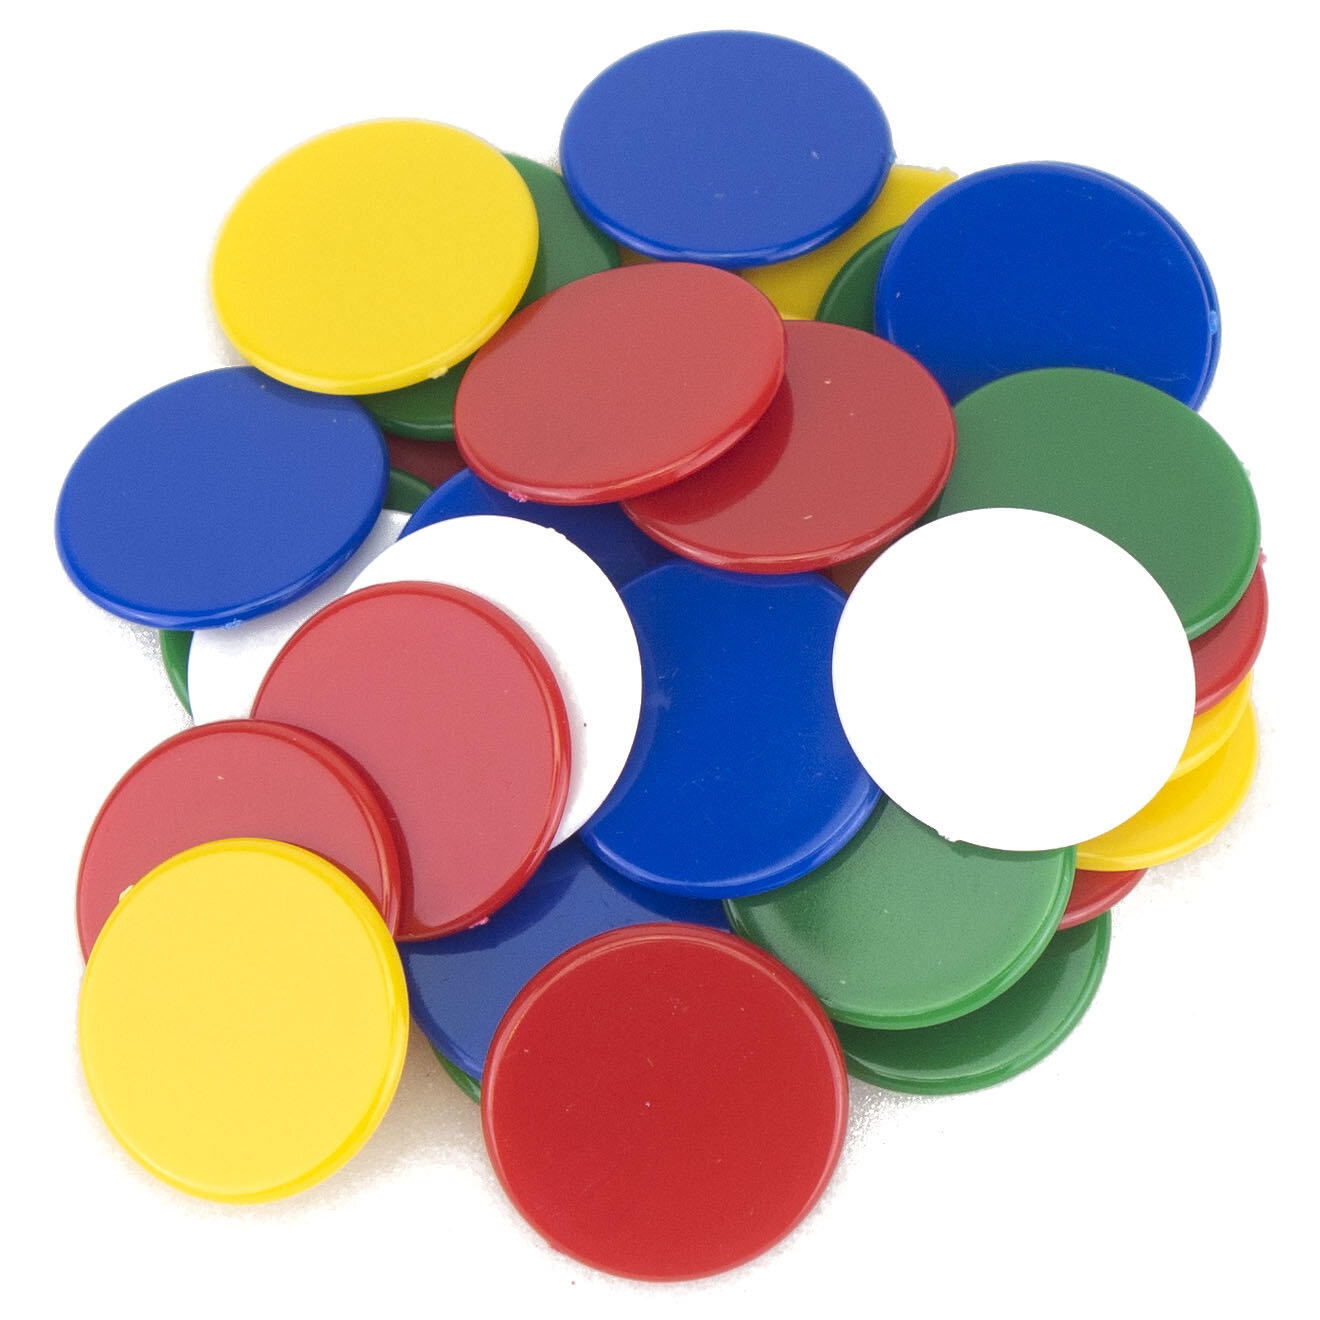 22mm diameter plastic x 100 Counters 5 Colour Mix